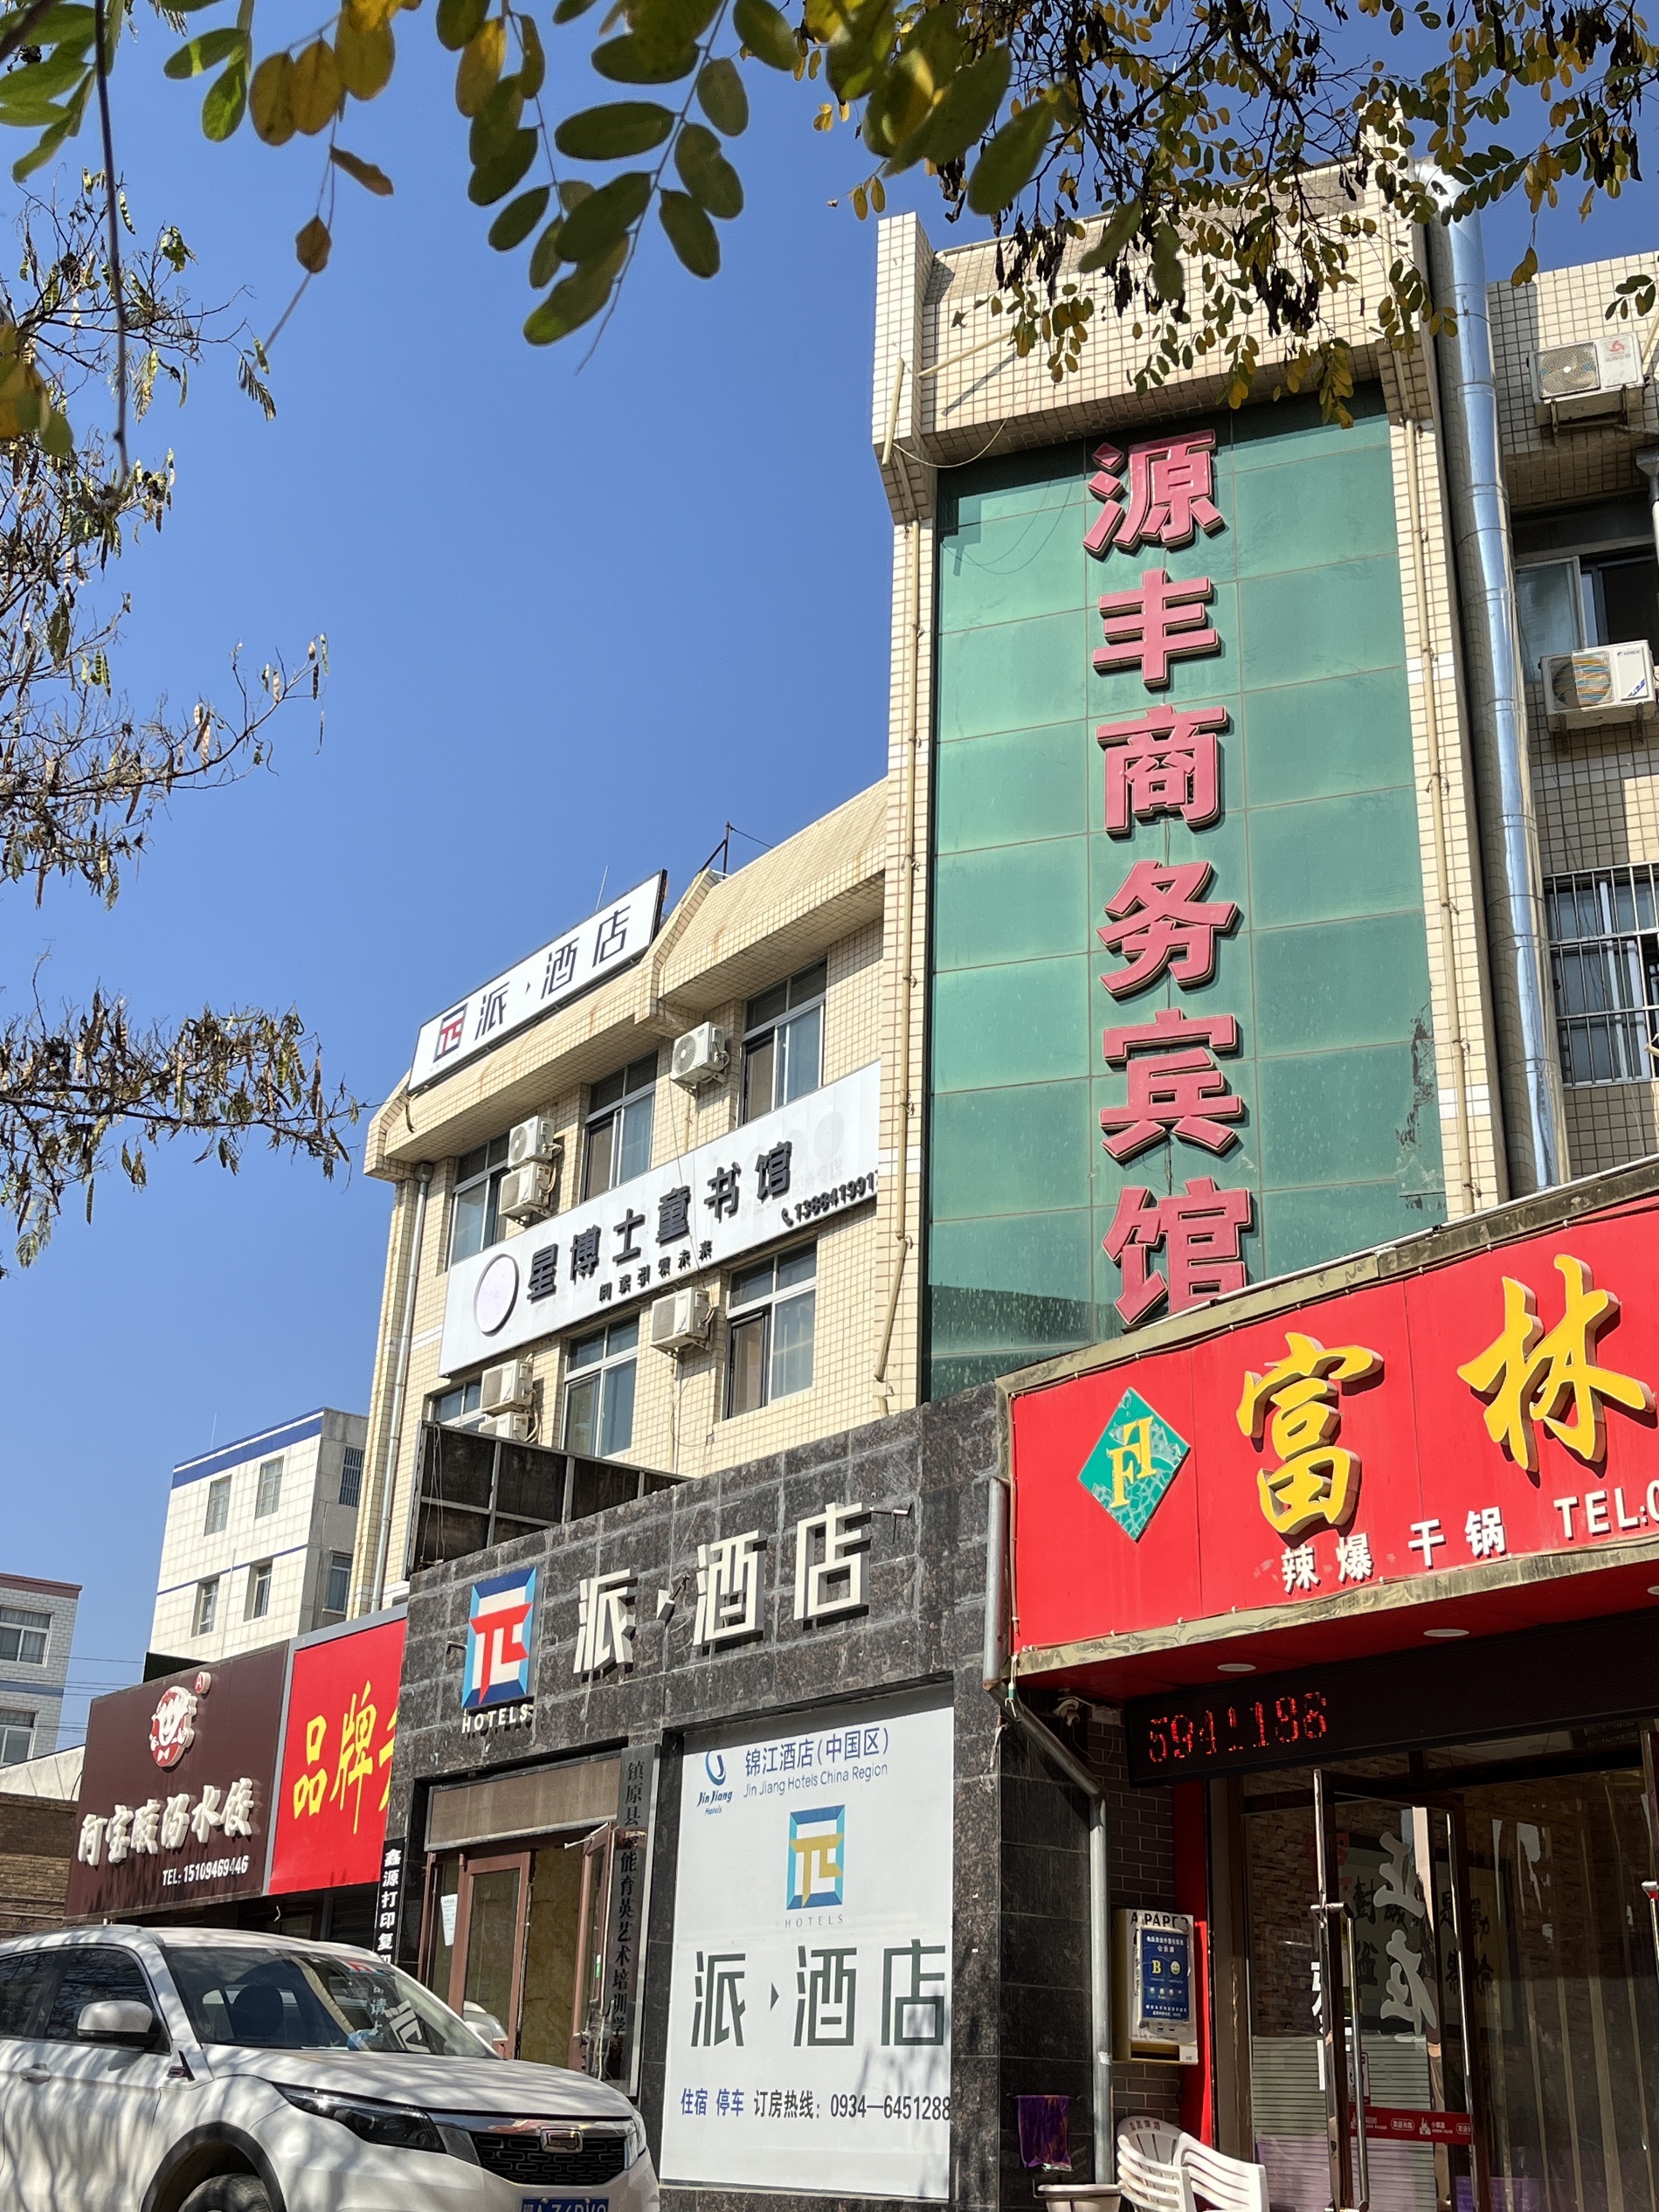 第一次来庆阳市出差，镇原县这个城市不大但是景色很不错，因为做医用耗材的所以选择人民医院附近的酒店方便